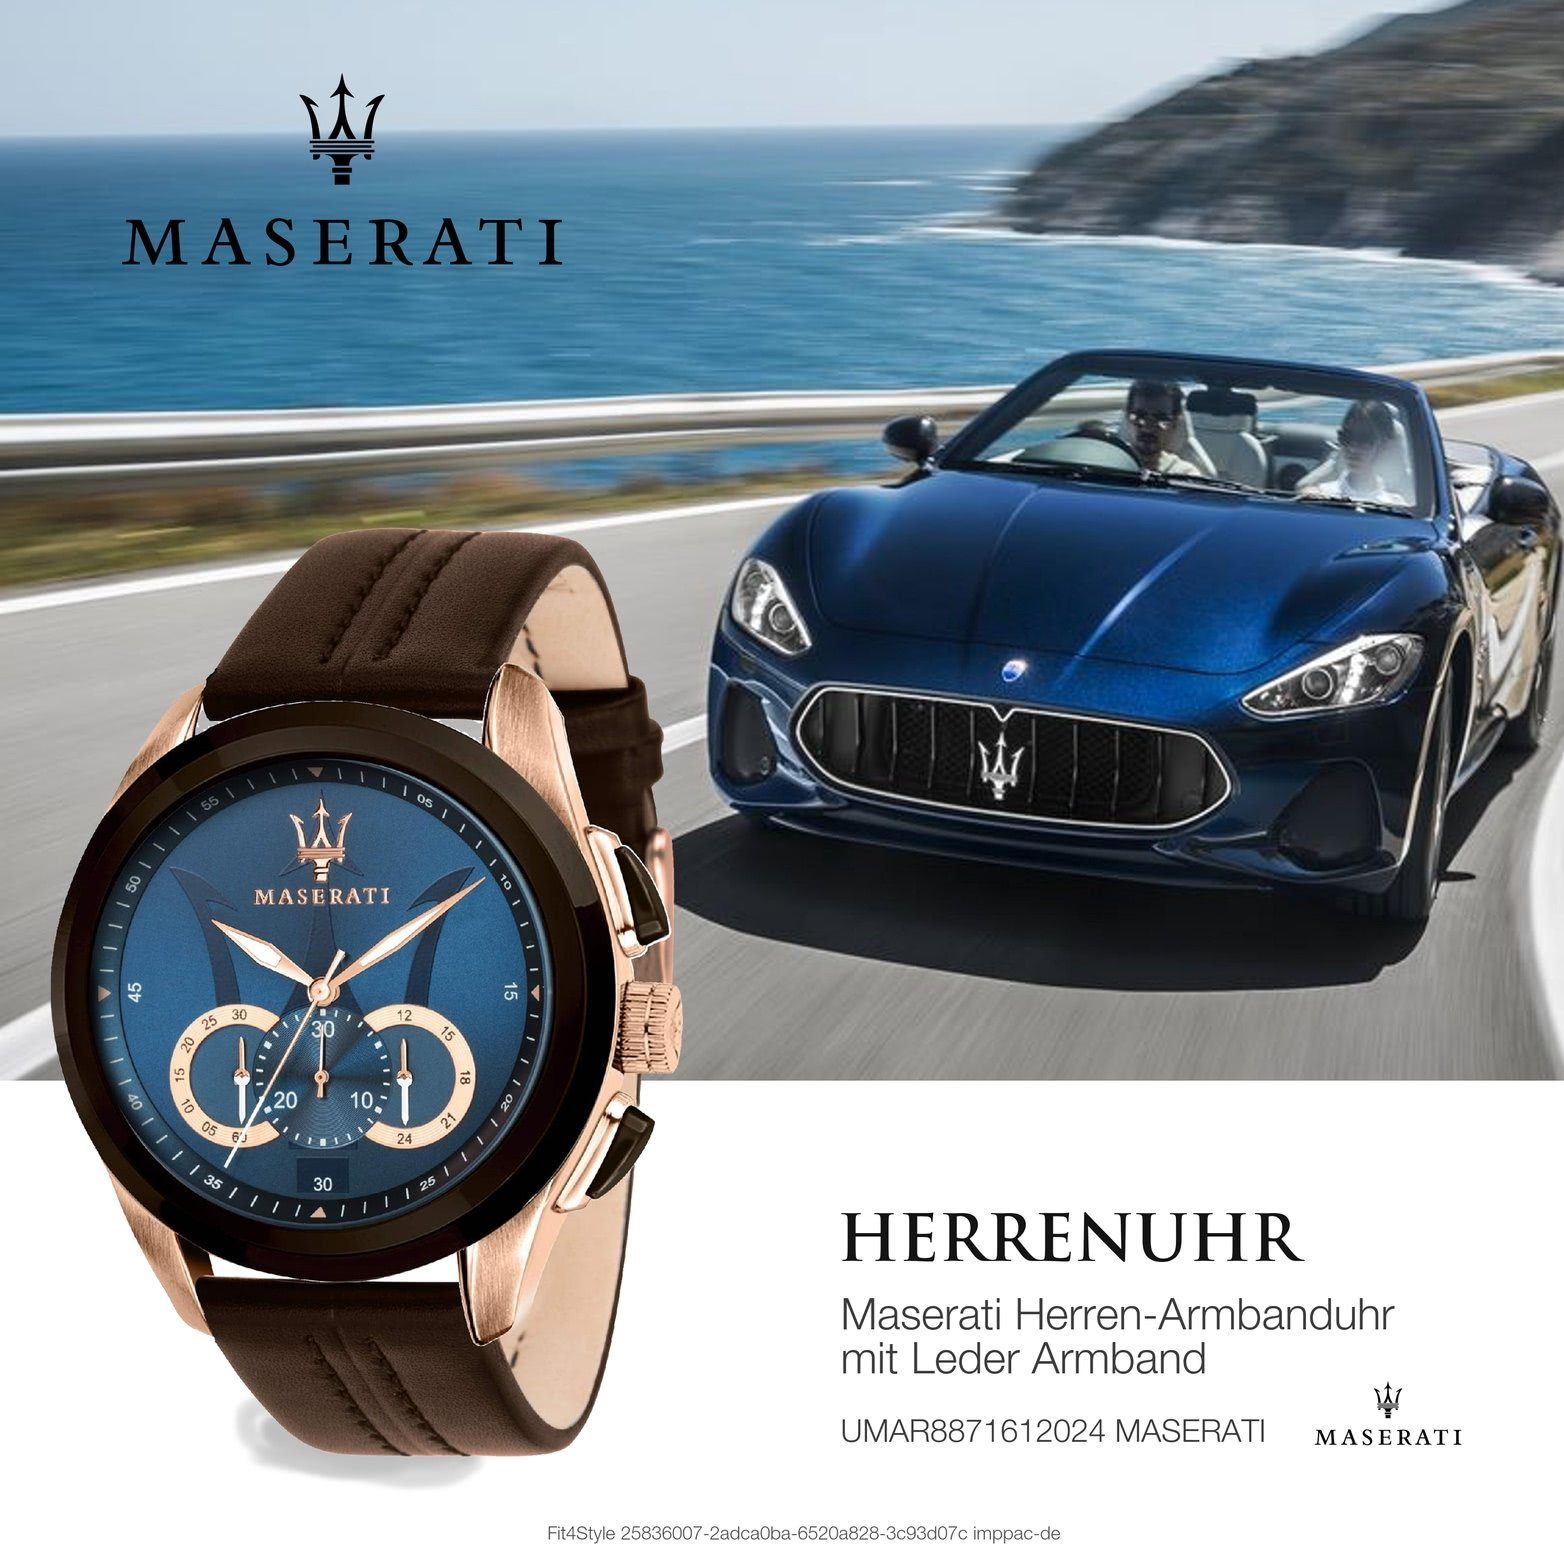 MASERATI Chronograph Maserati Leder Armband-Uhr, 55x45mm) groß (ca. Herrenuhr blau rundes Gehäuse, Lederarmband